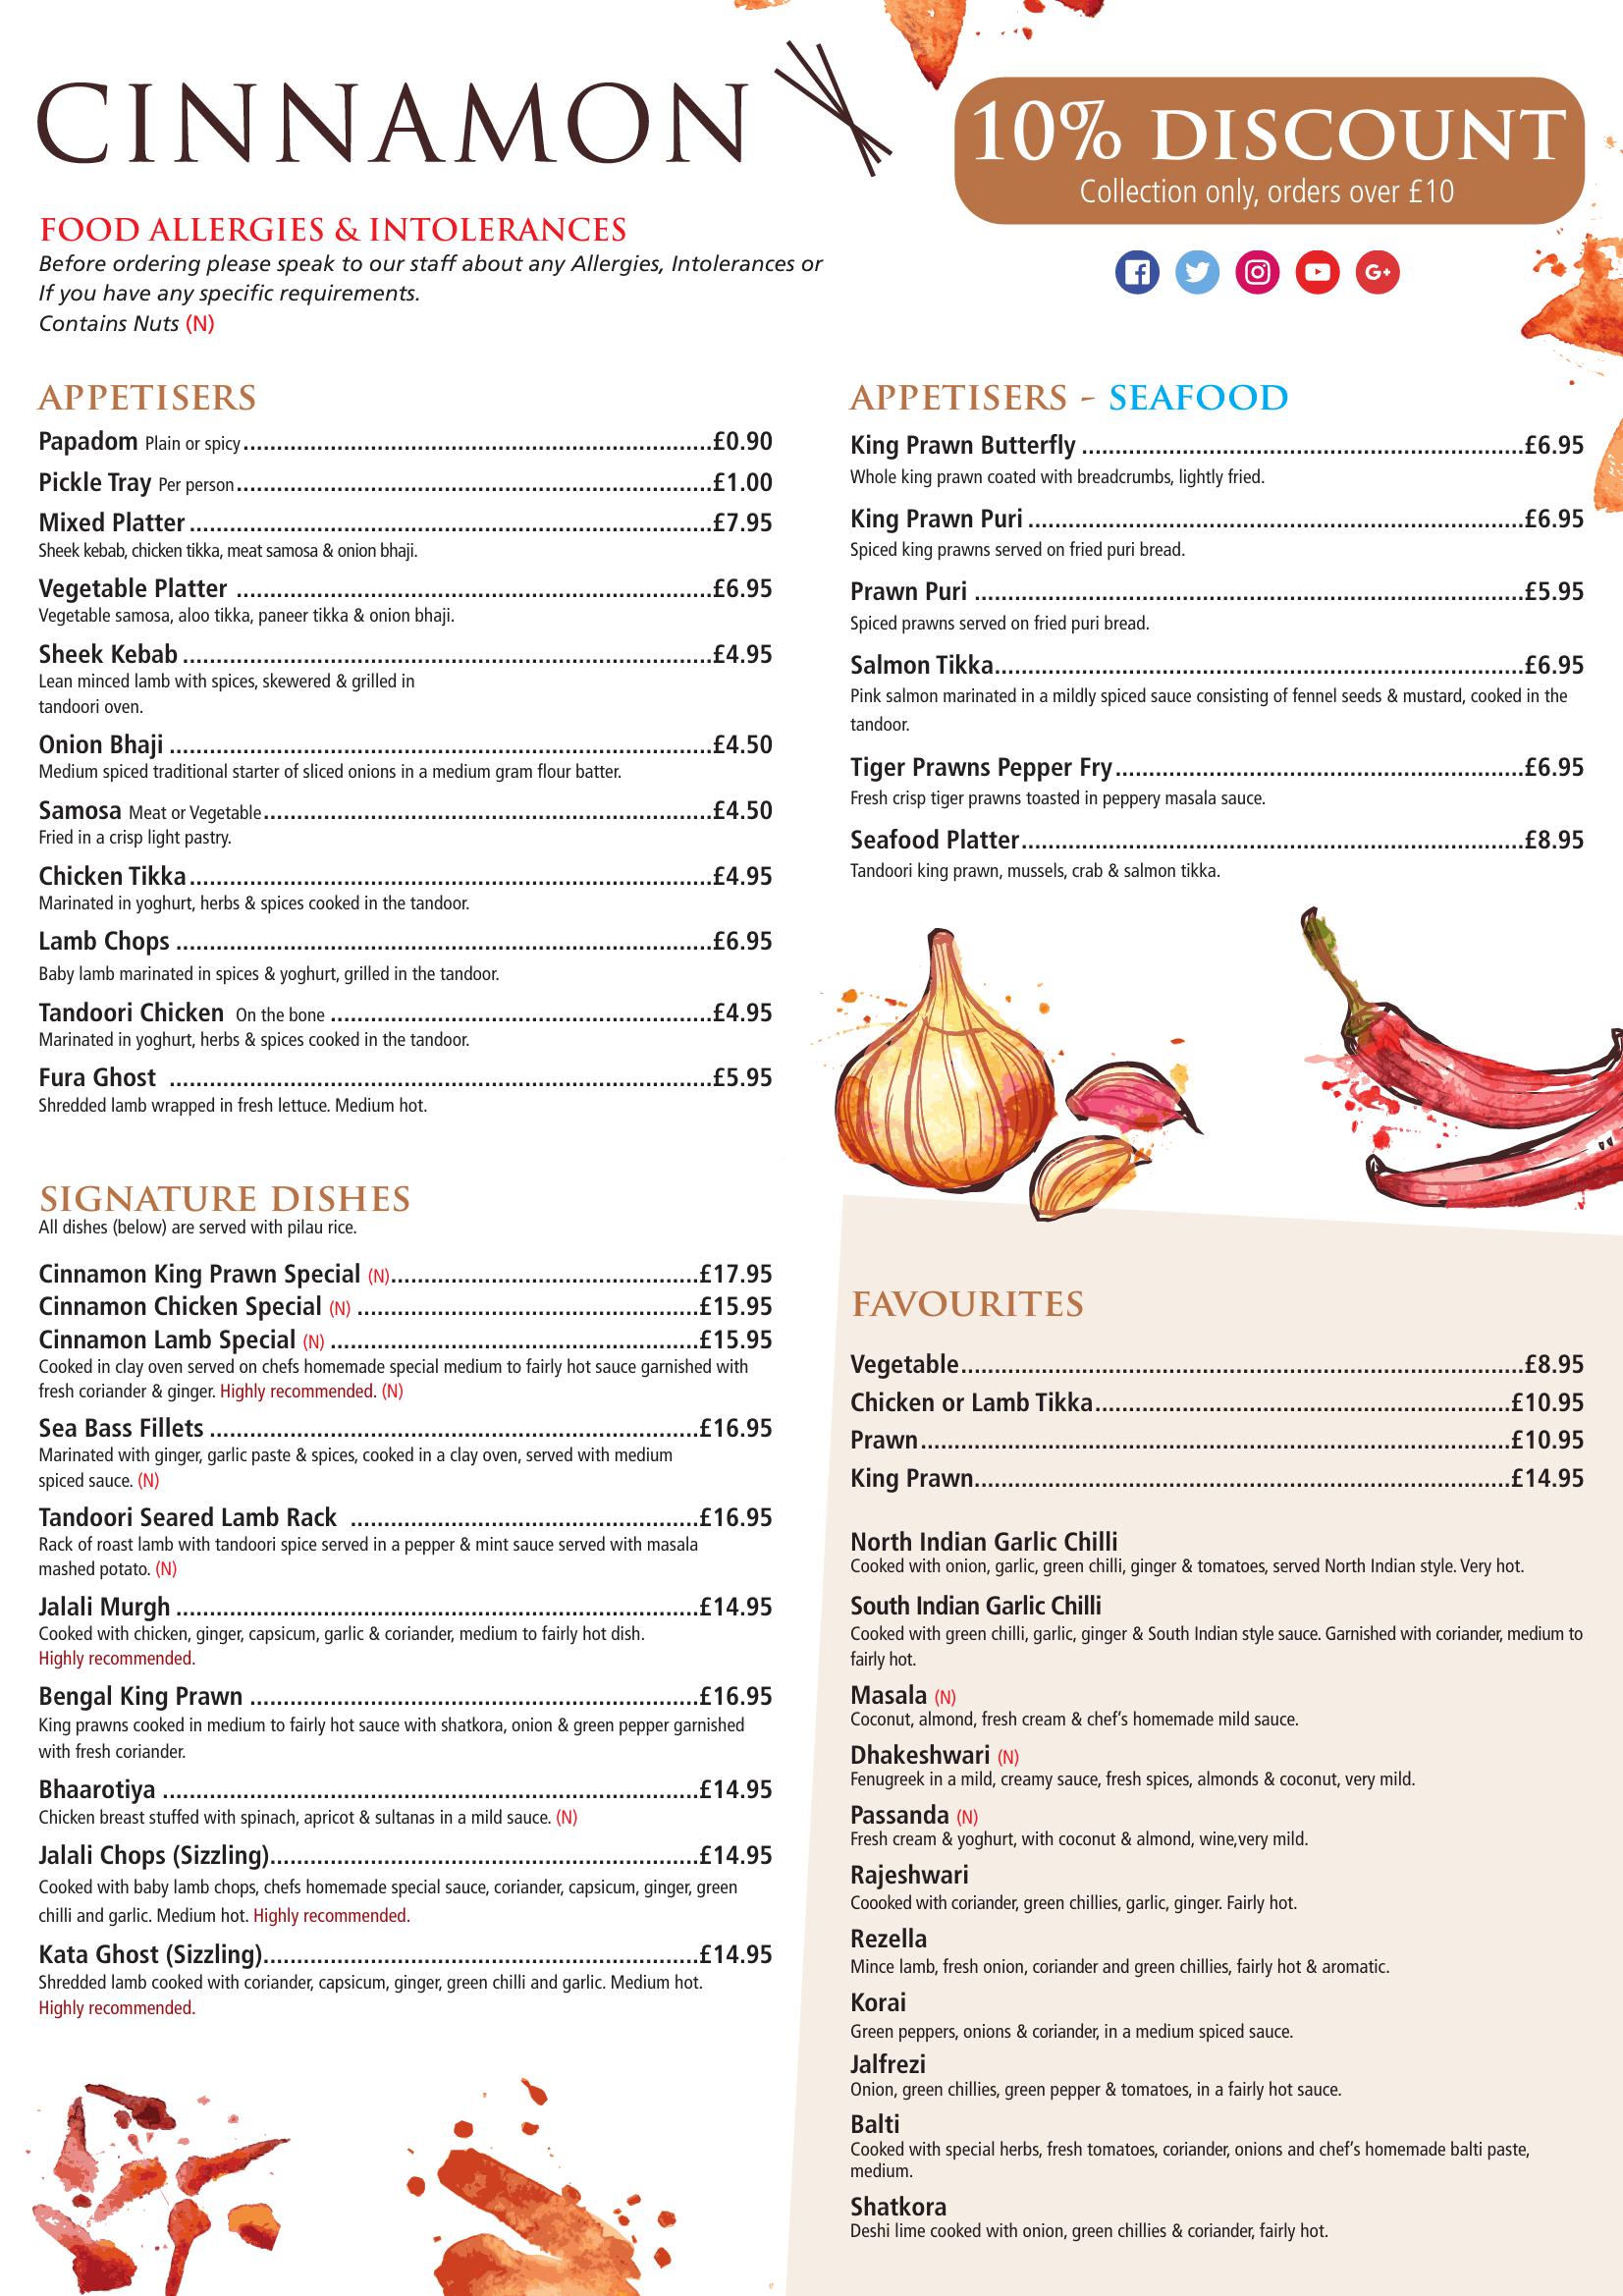 Cinnamon Indian restaurant - main menu